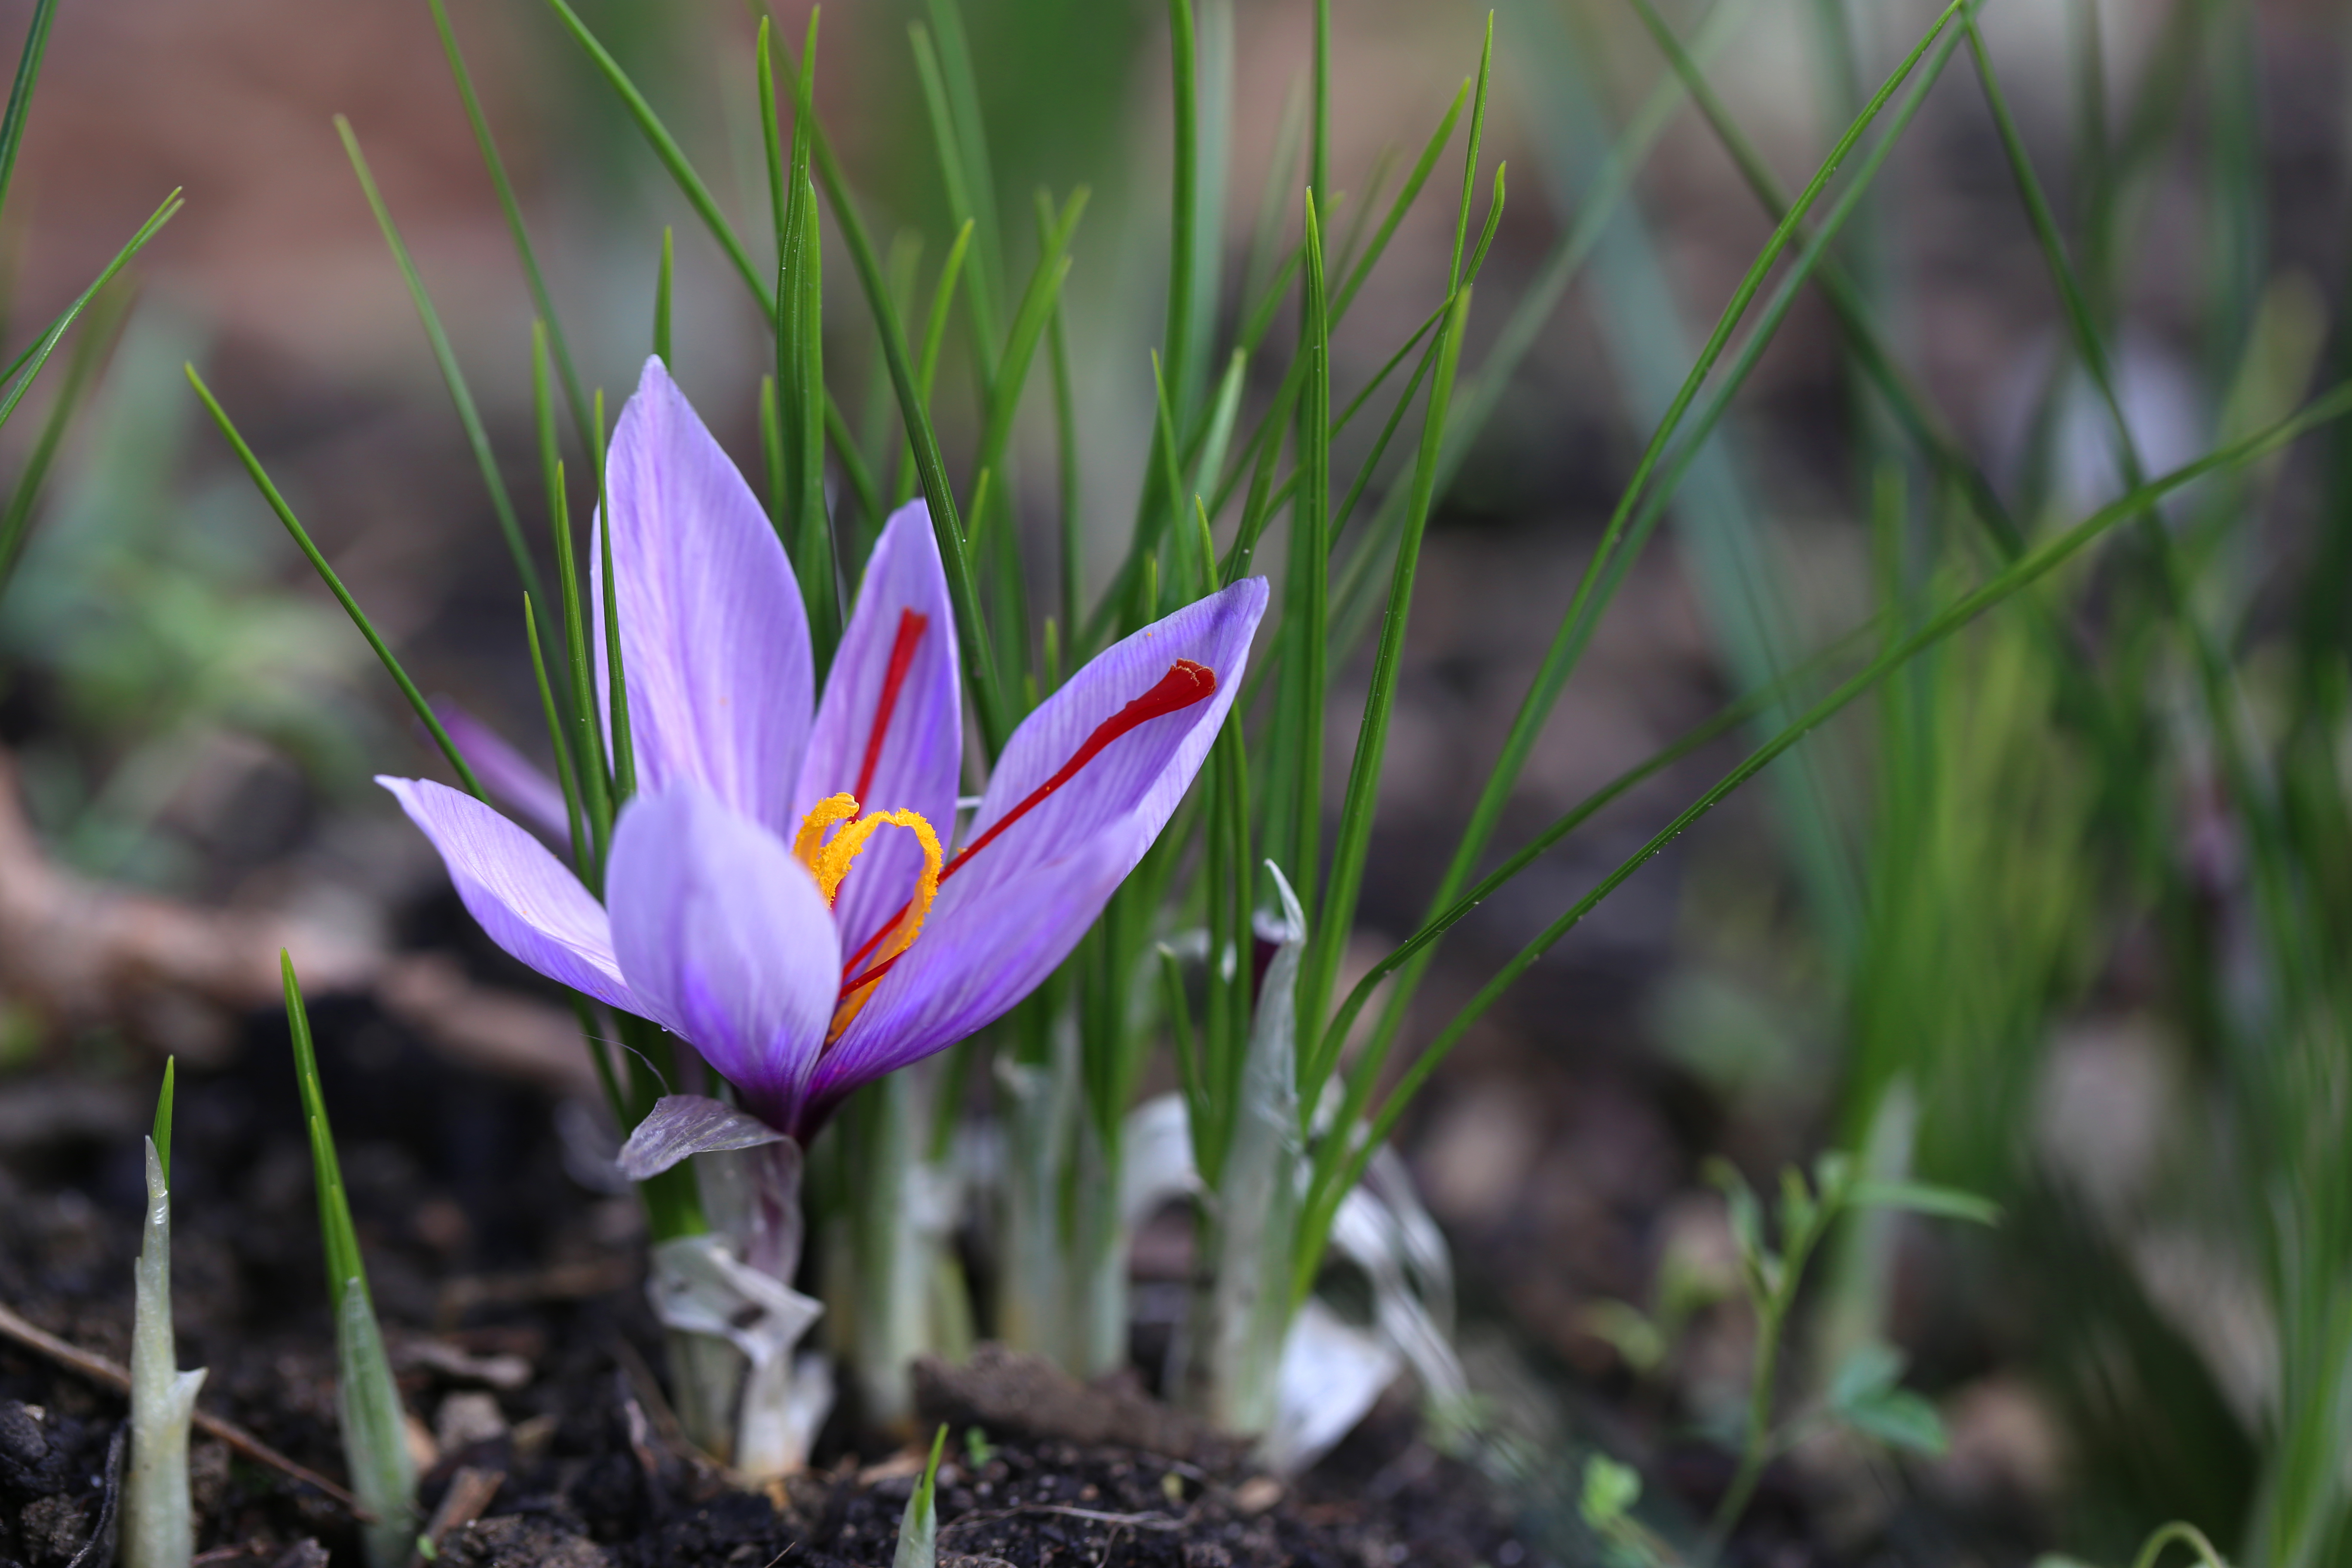 Crocus sativus - fleur de safran - delimoon.com - safran fribourgeois produit dans le Vully et certifié "produit du terroir fribourgeois